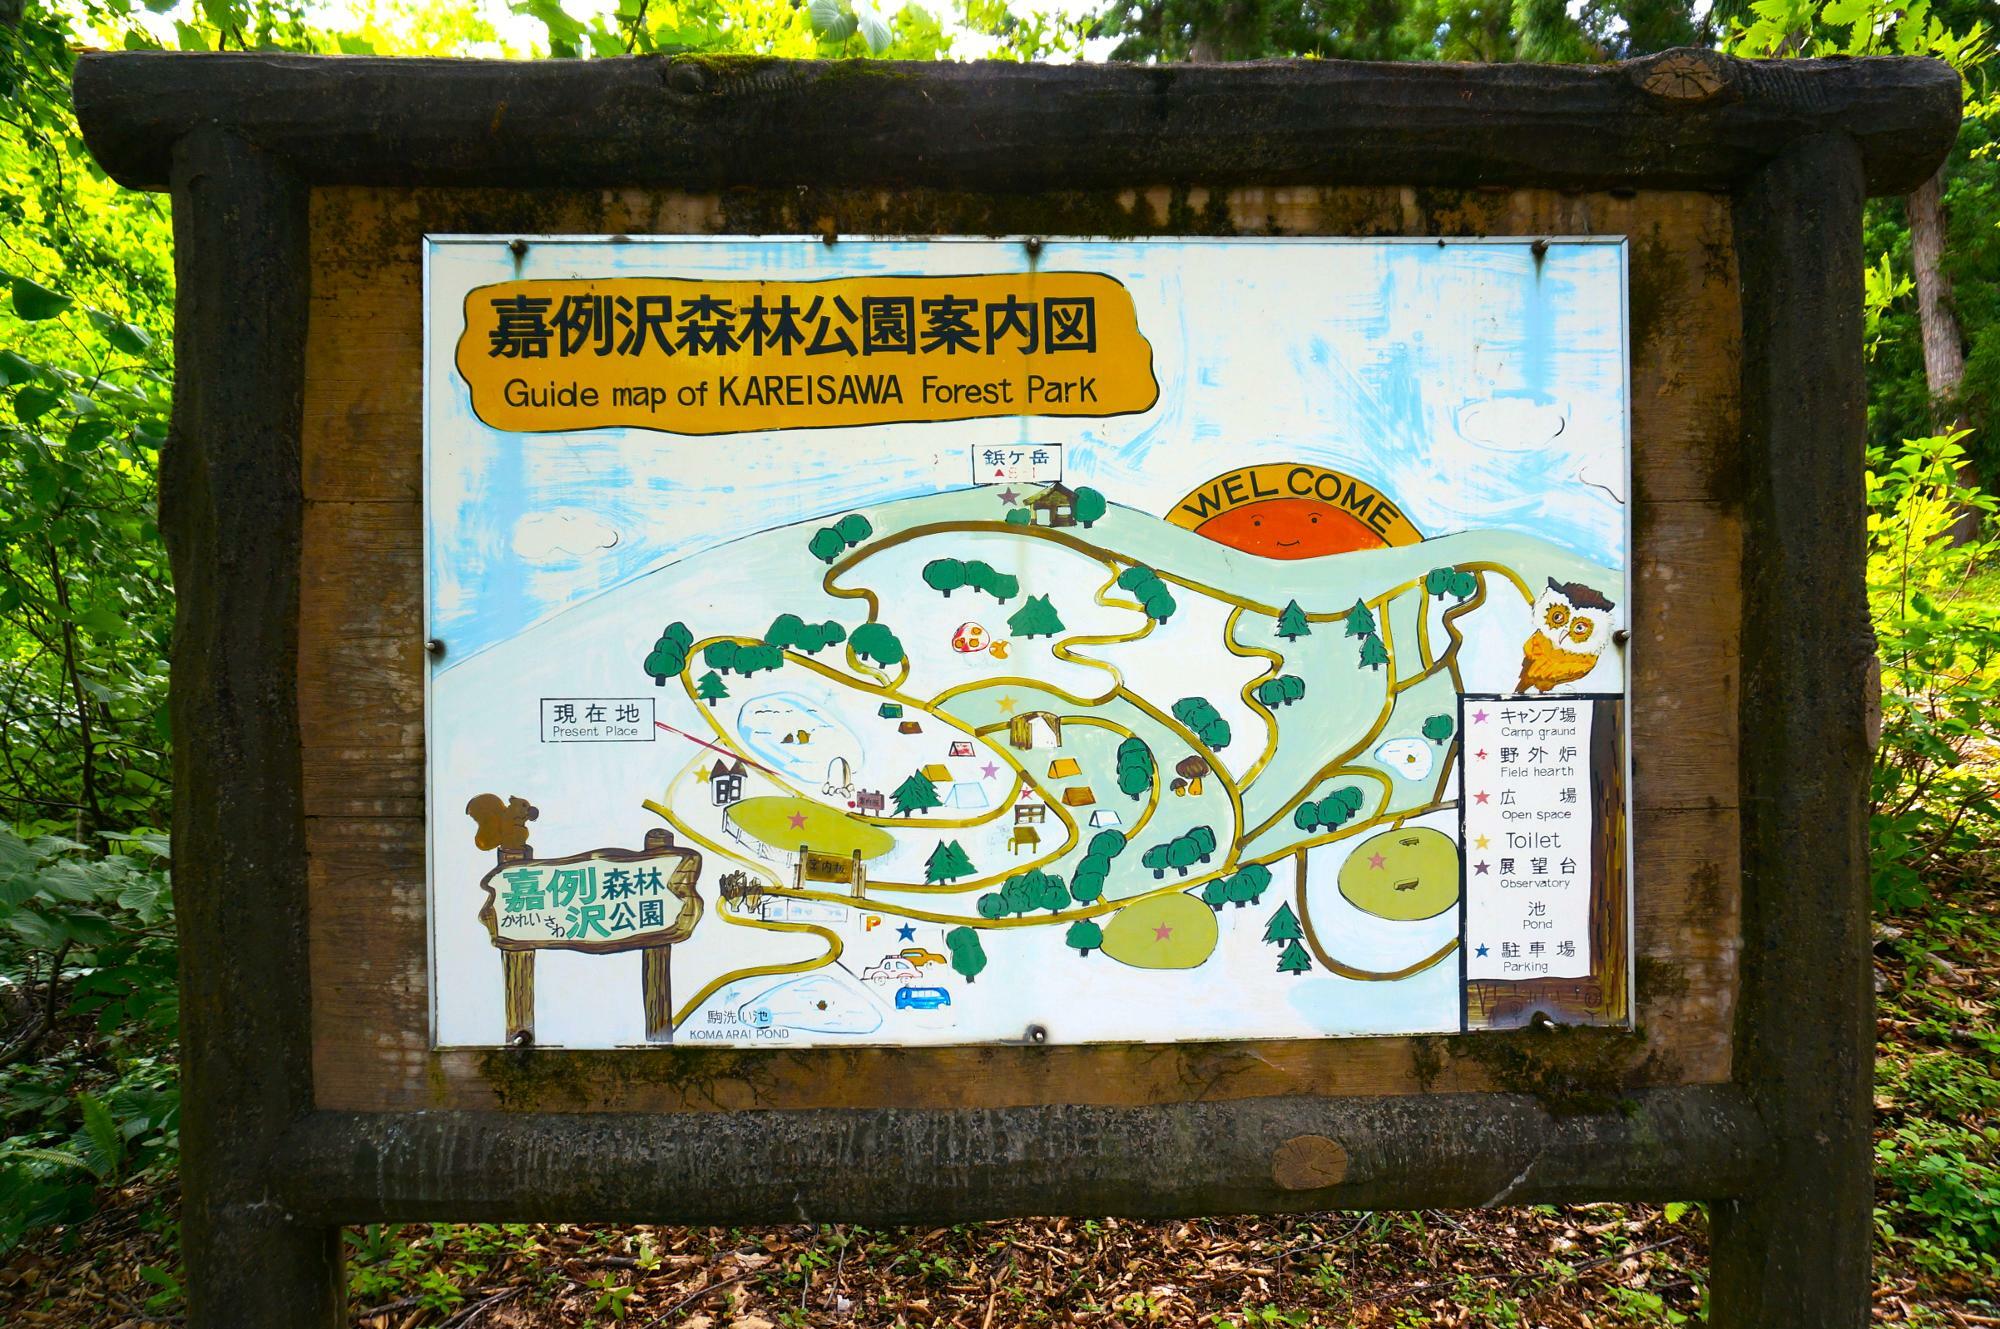 「鋲ヶ岳」を含む、「嘉例沢森林公園」の案内図